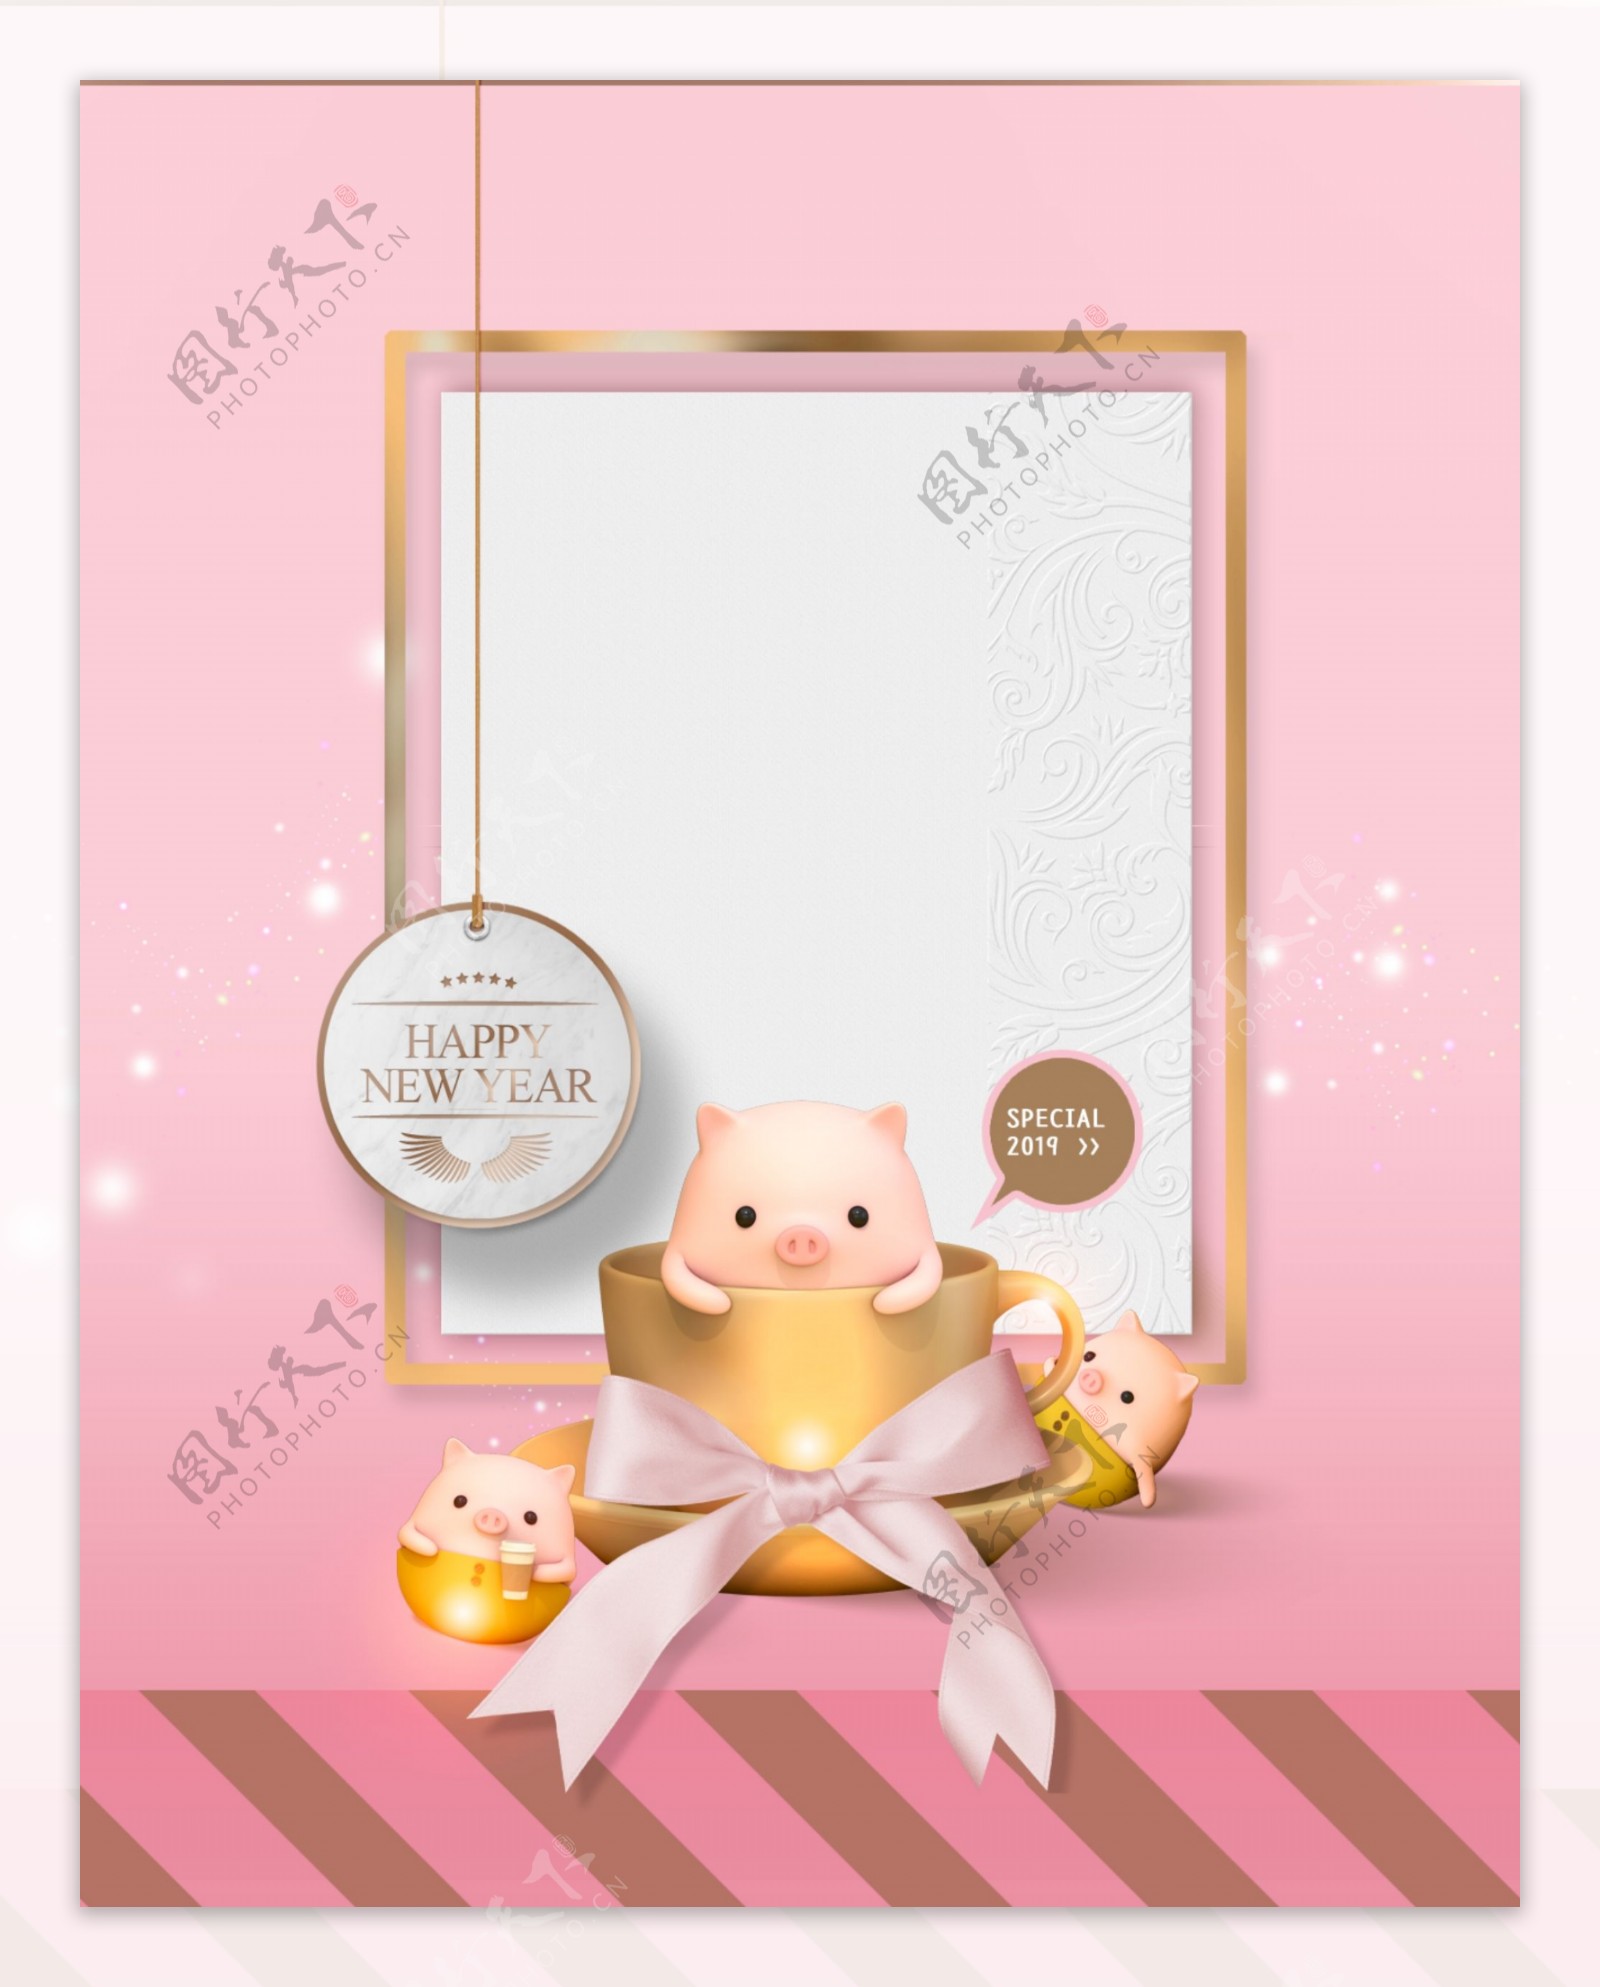 猪年新年快乐粉色背景设计